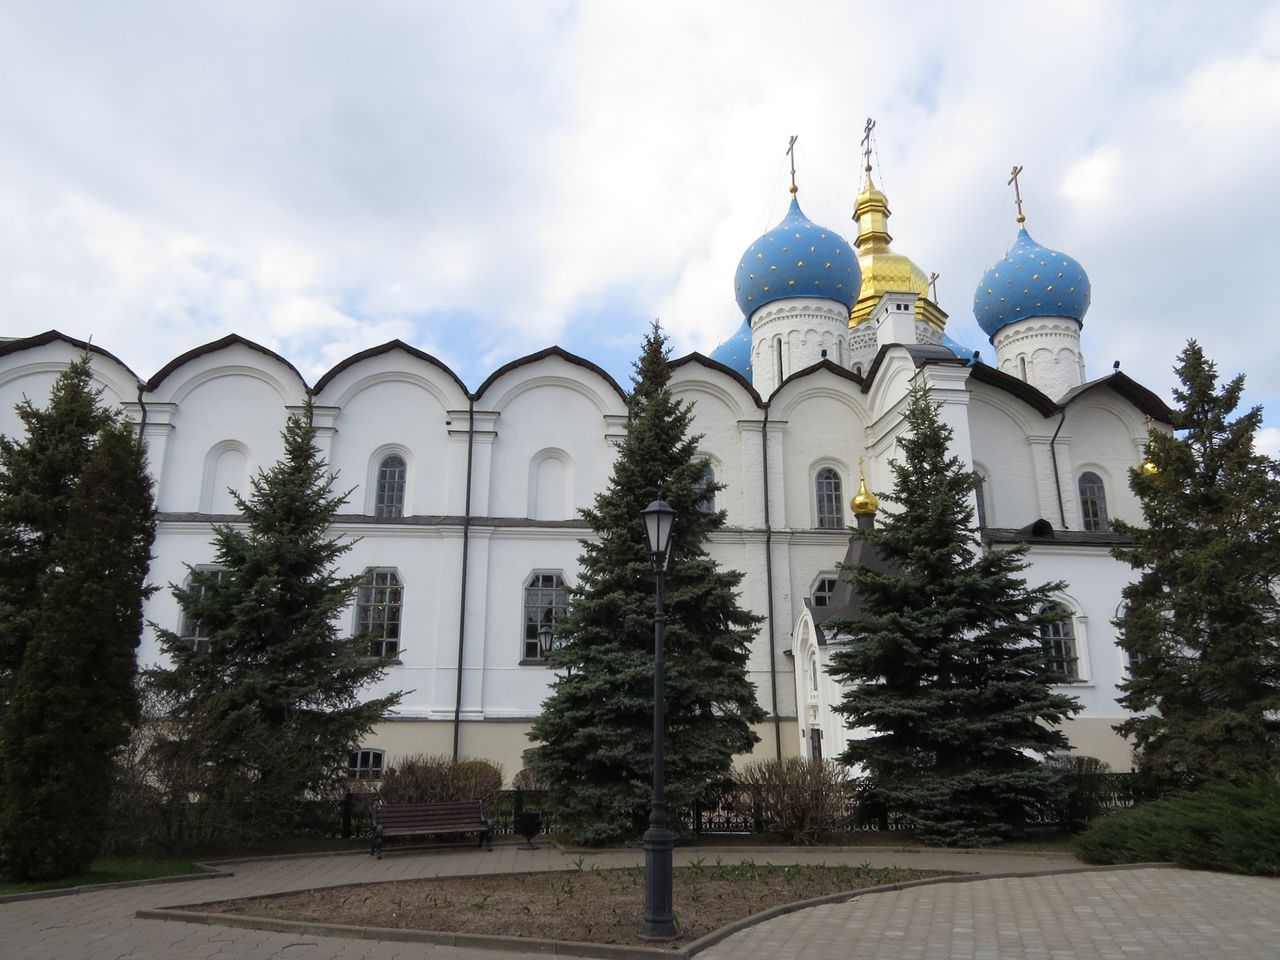 Историческая прогулка по Казанскому кремлю | Цена 3150₽, отзывы, описание экскурсии